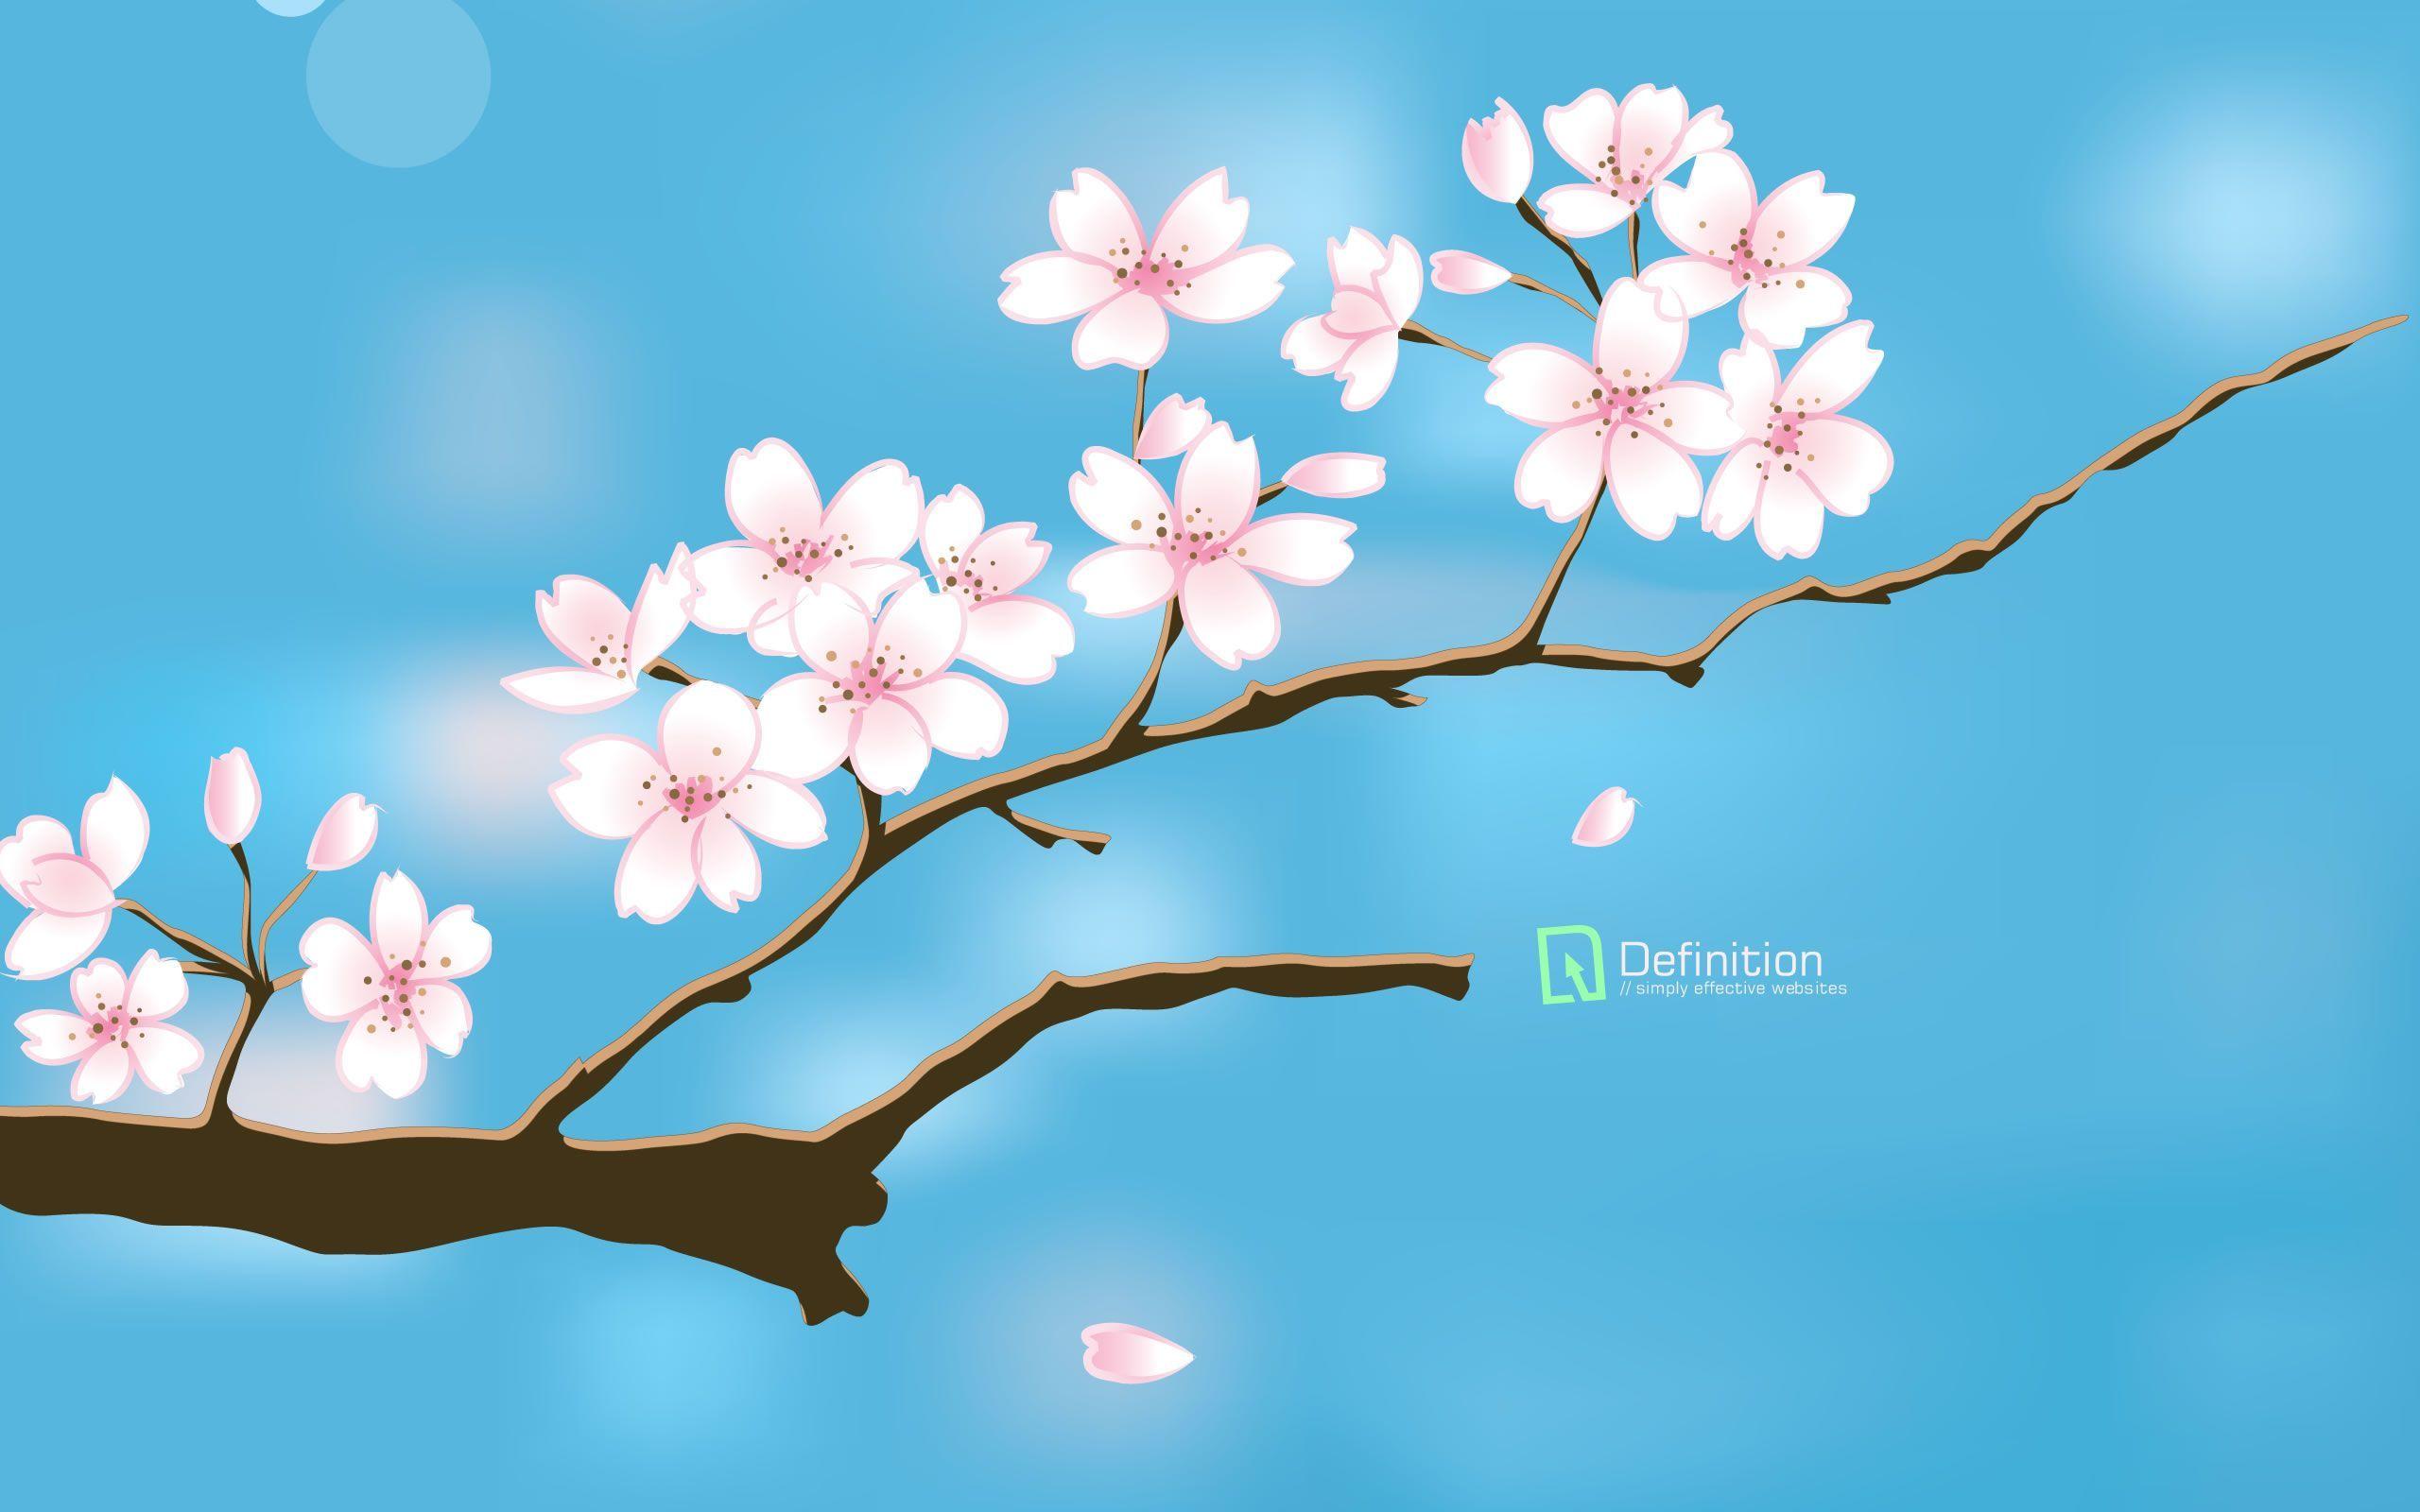 Chic Free Spring Desktop Wallpaper 2560x1600PX Free Spring